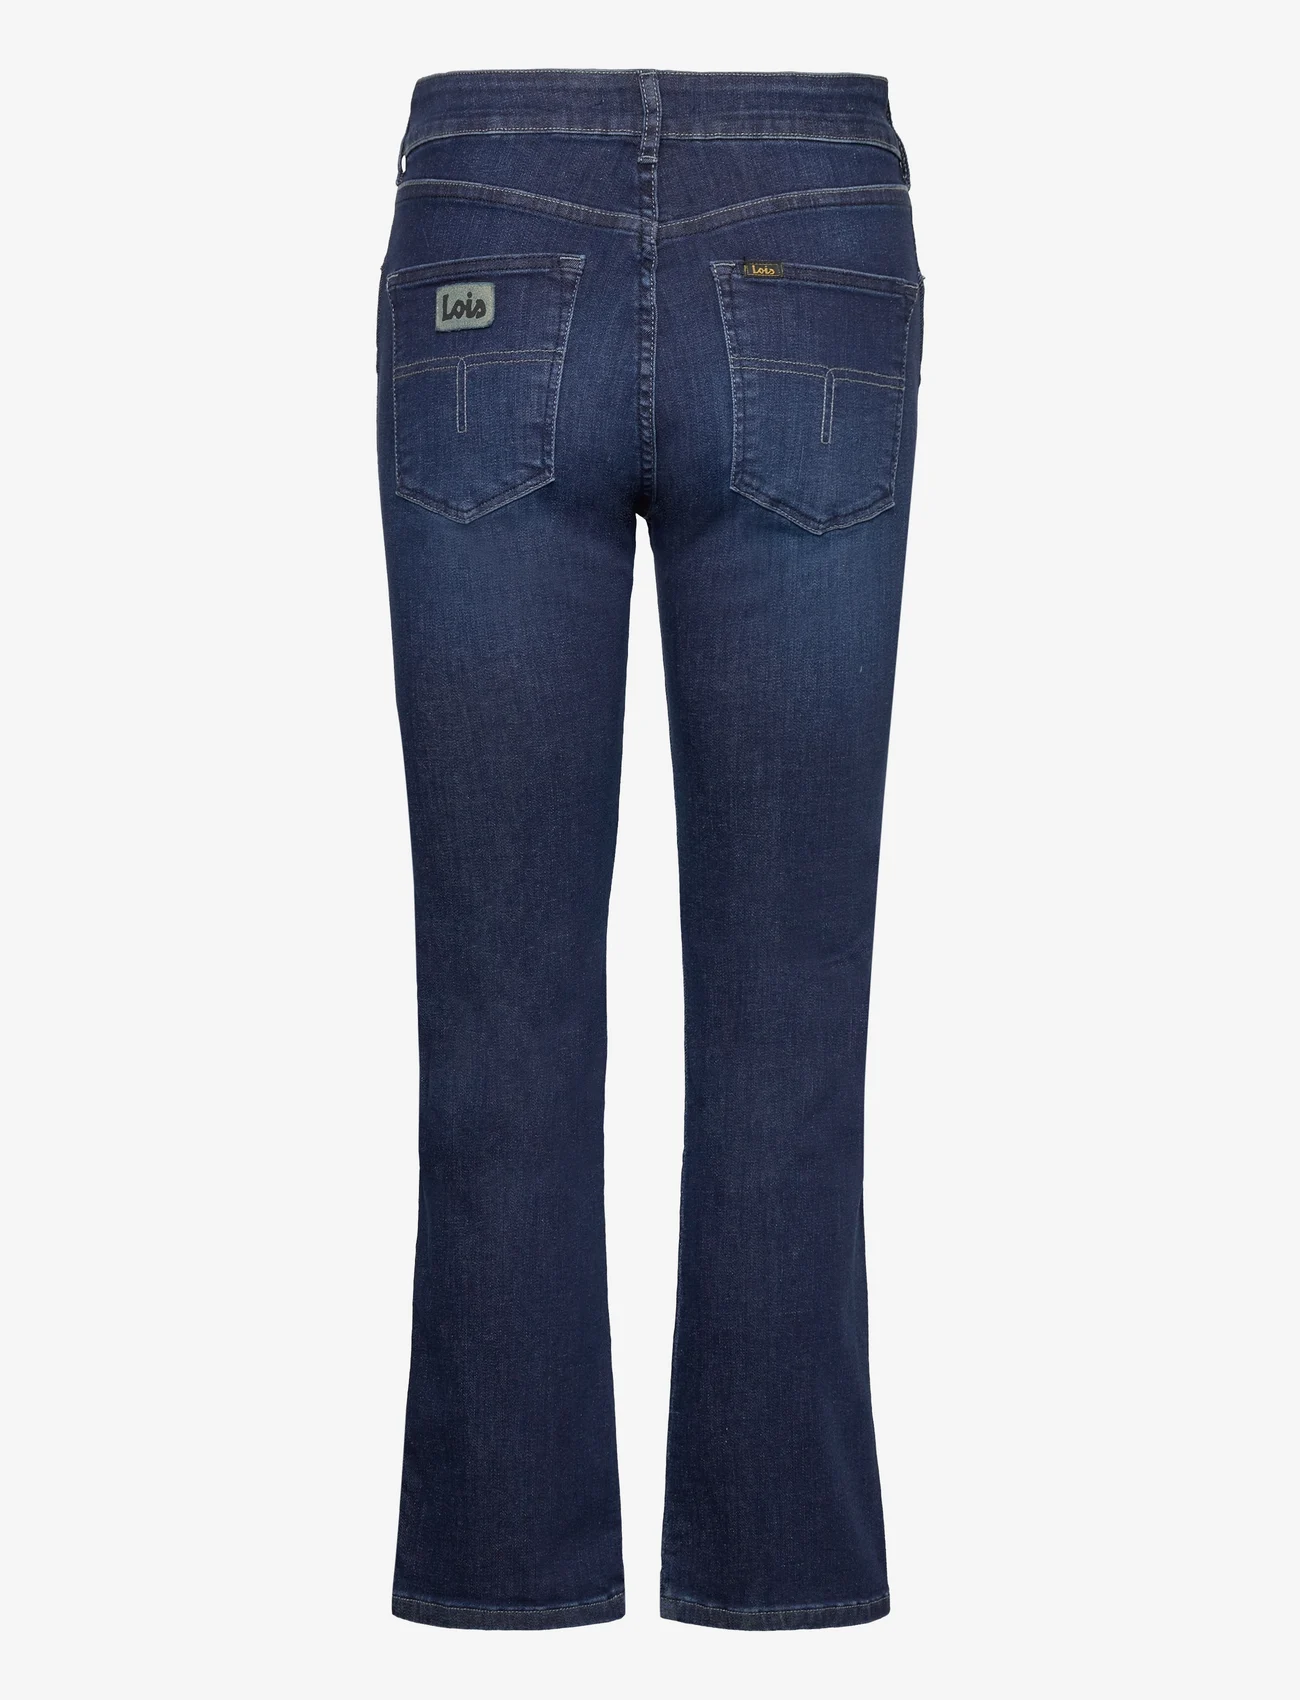 Lois Jeans - Malena-F 5707 Marconi Mist - flared jeans - dark blue - 1